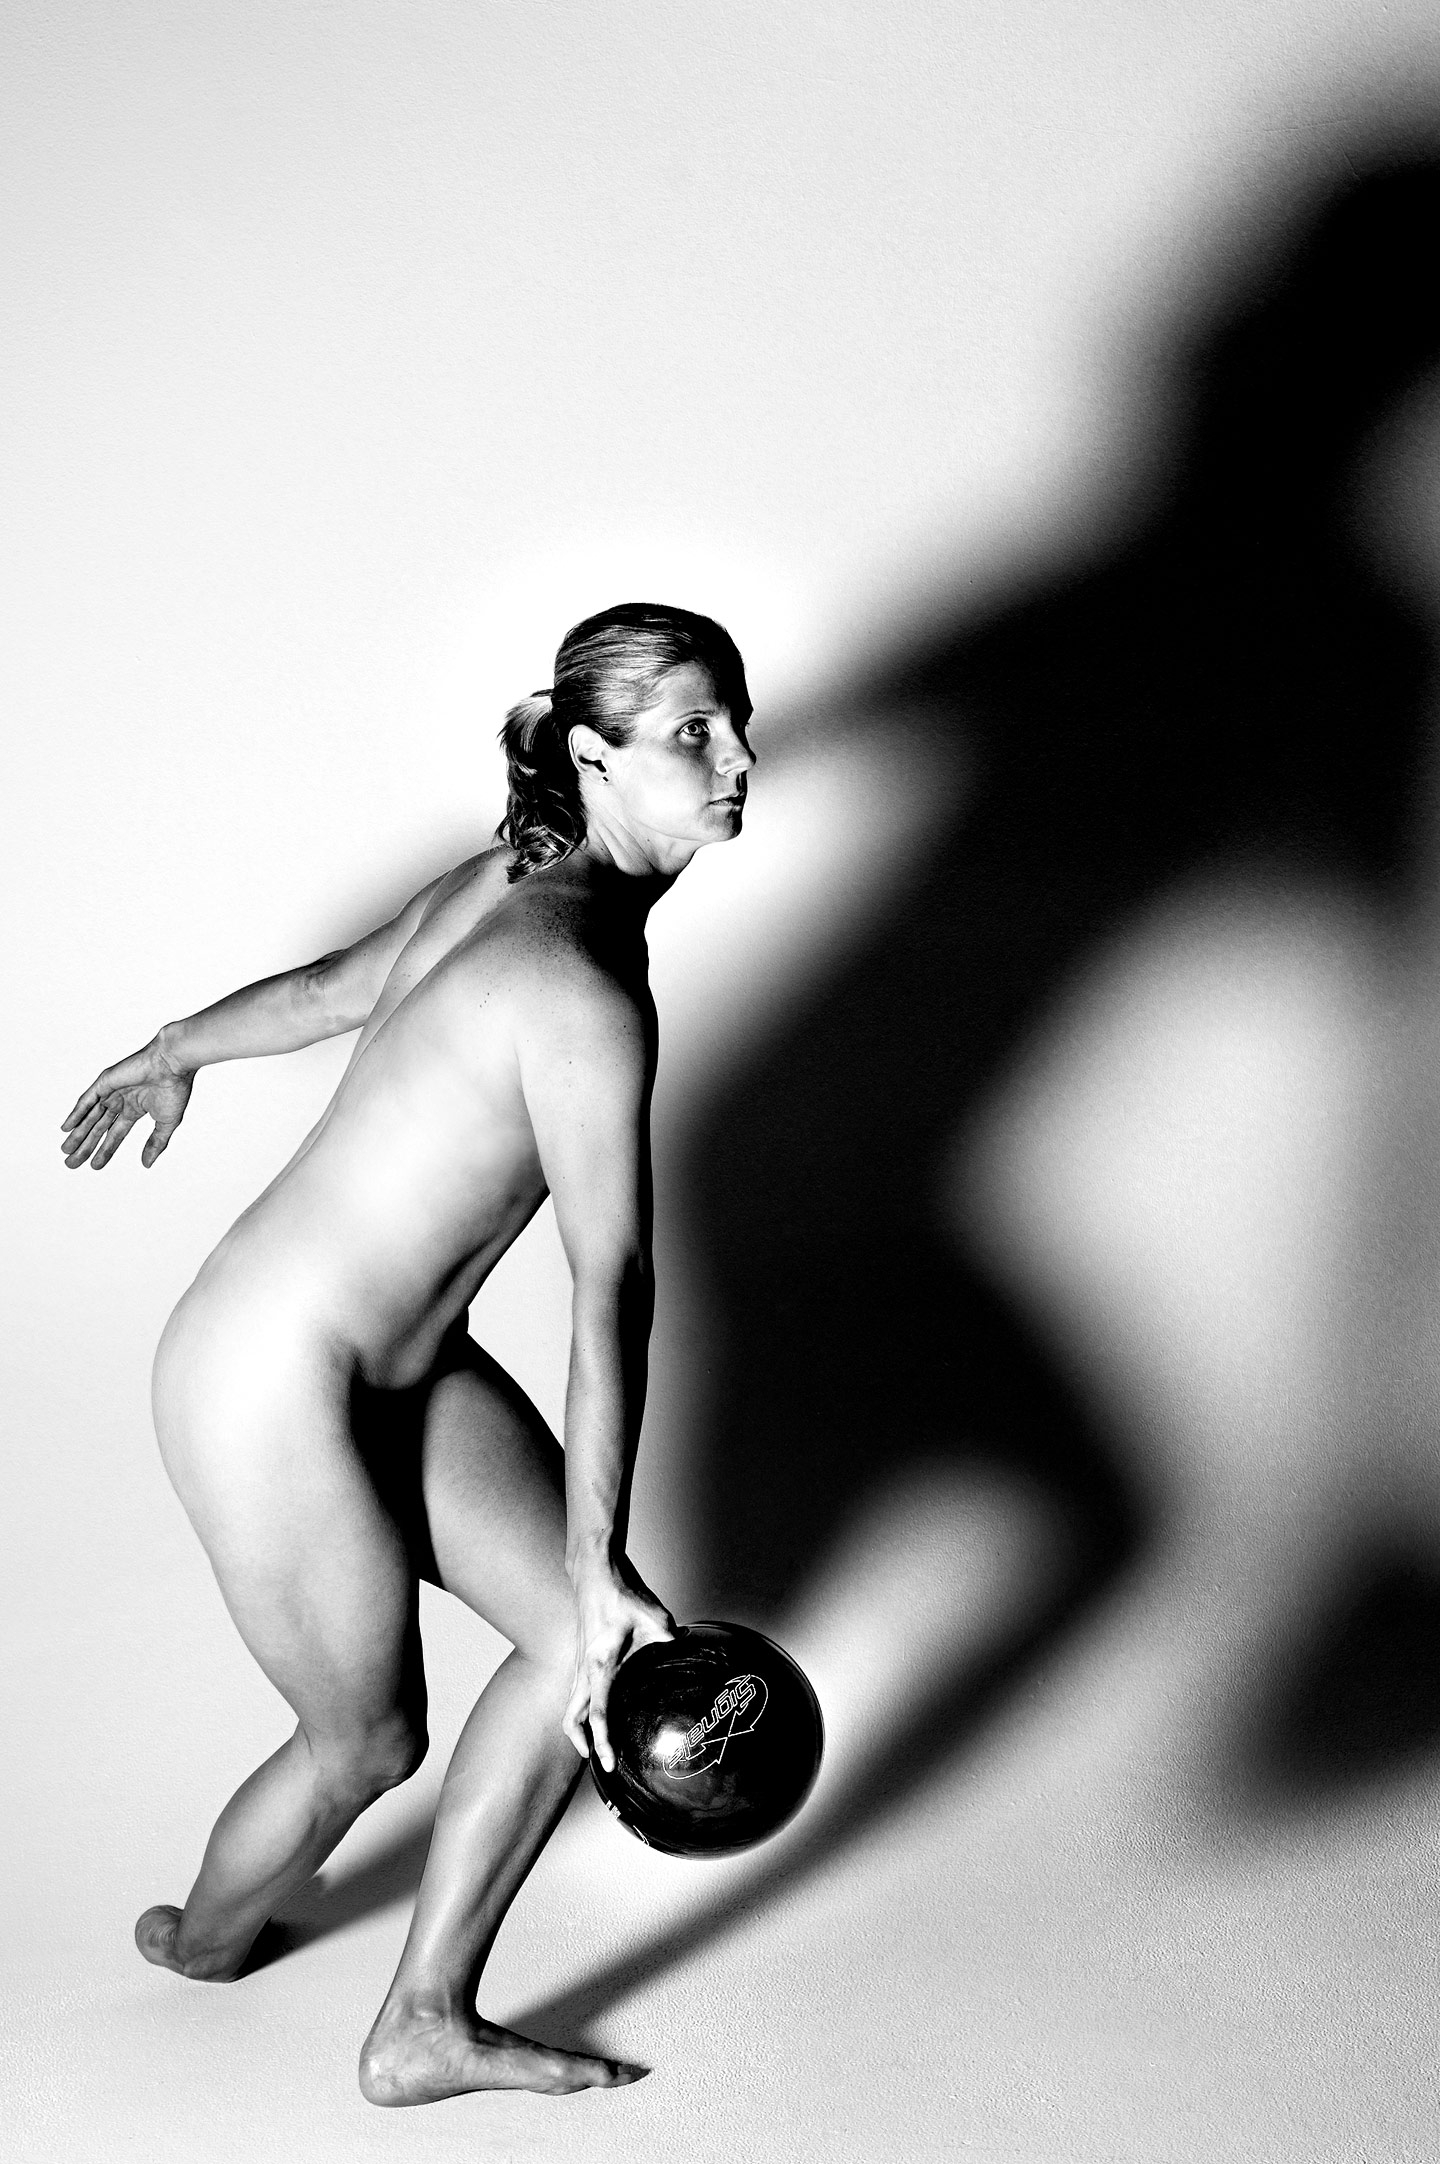 Огромные груди обнаженной спортсменки 15 фото эротики